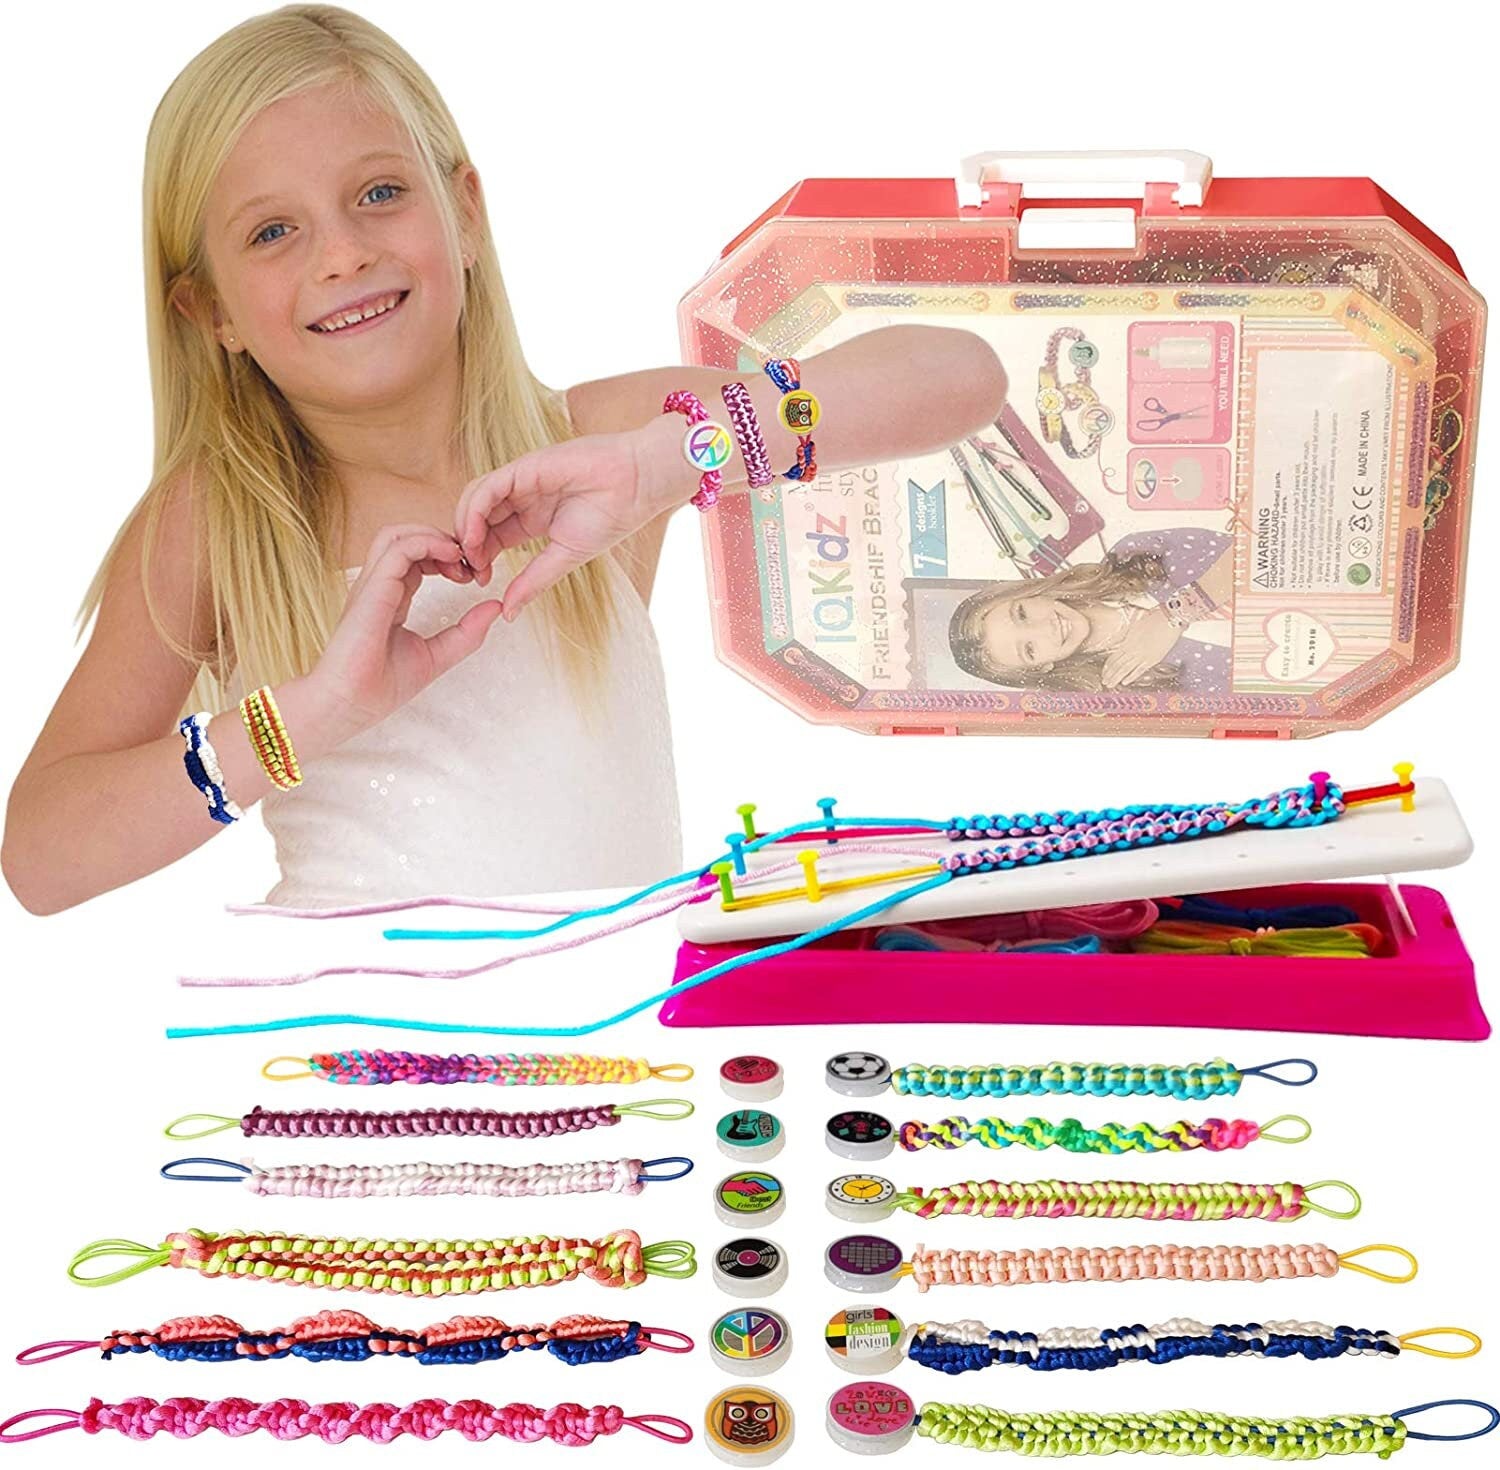 Girls Crafts Friendship Bracelet String Making Kit - Birthday